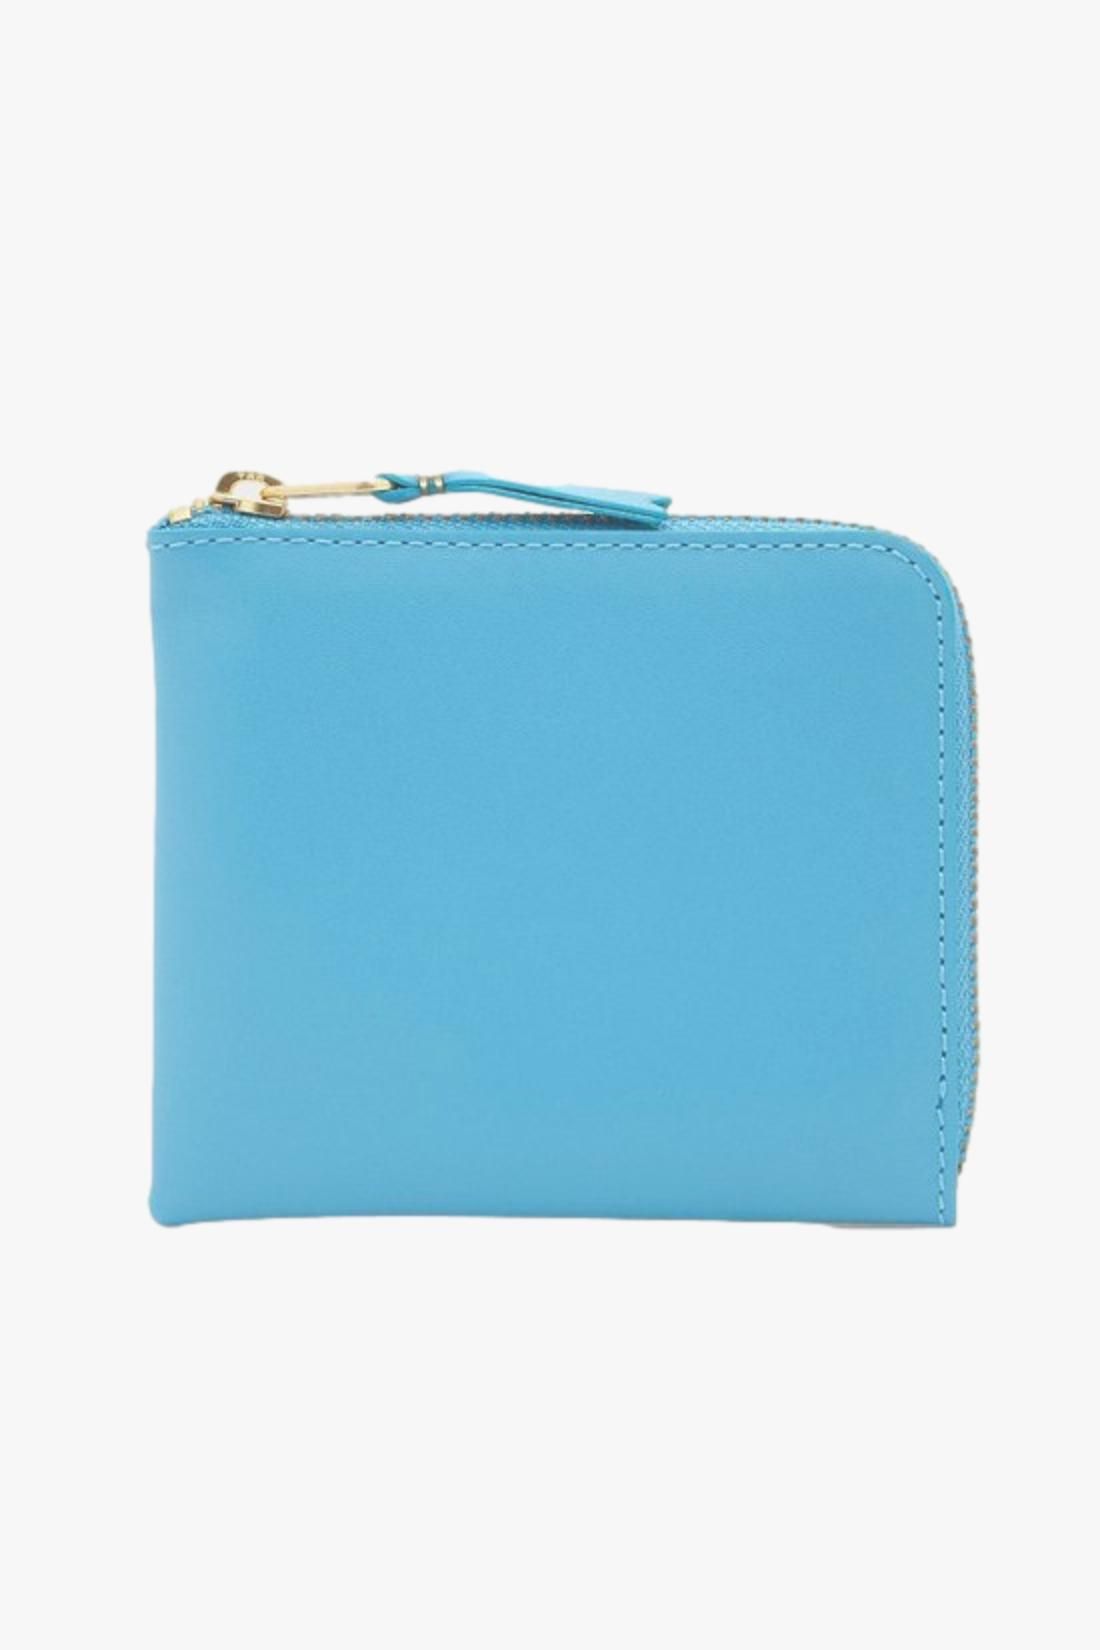 COMME DES GARÇONS WALLETS / Cdg classic leather wallet Sa3100 blue